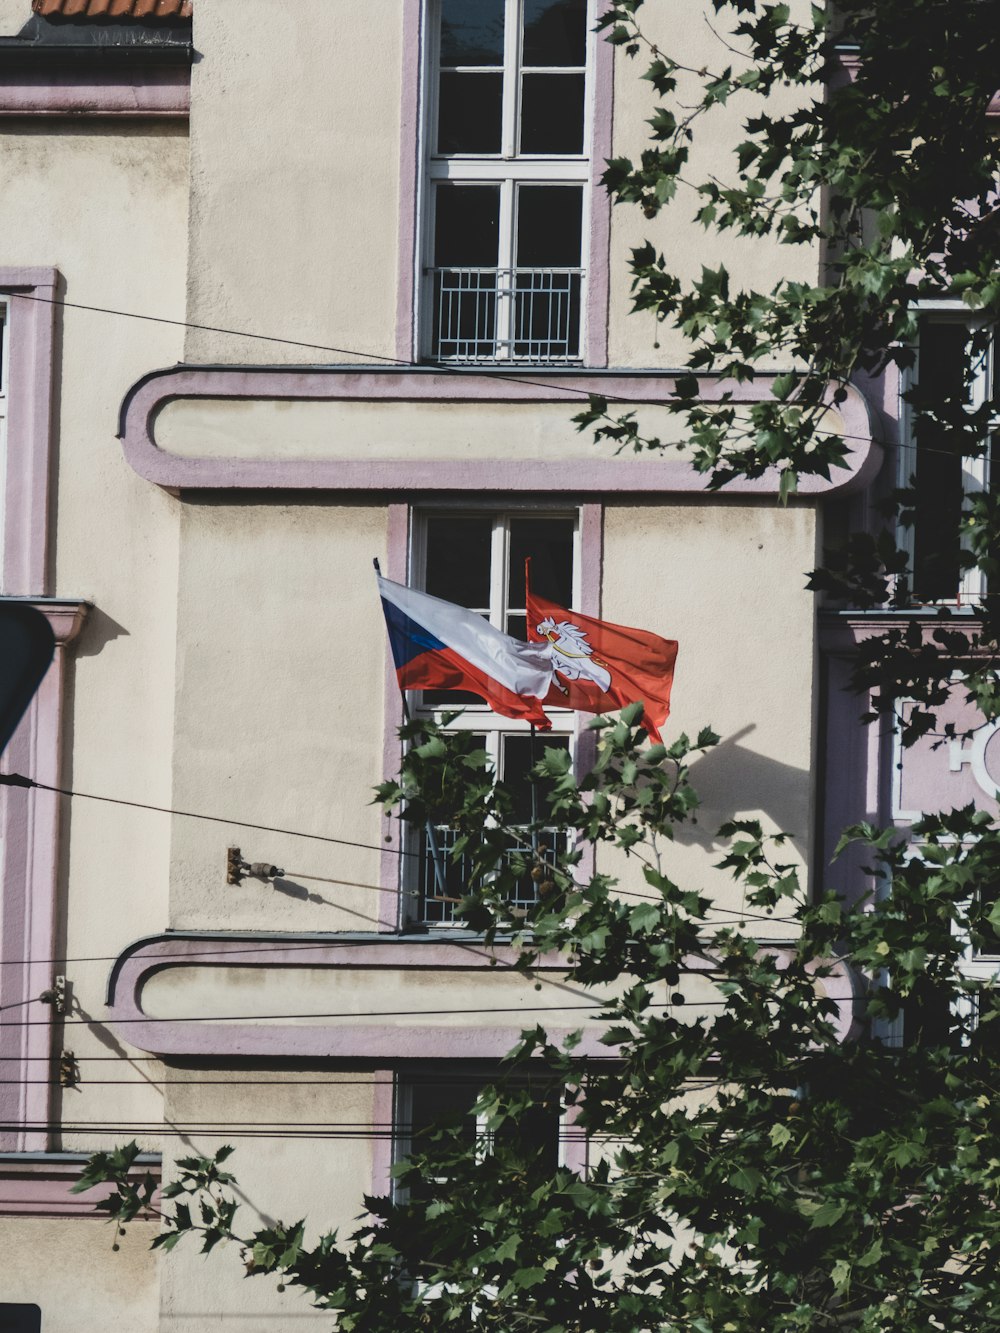 a flag on a building